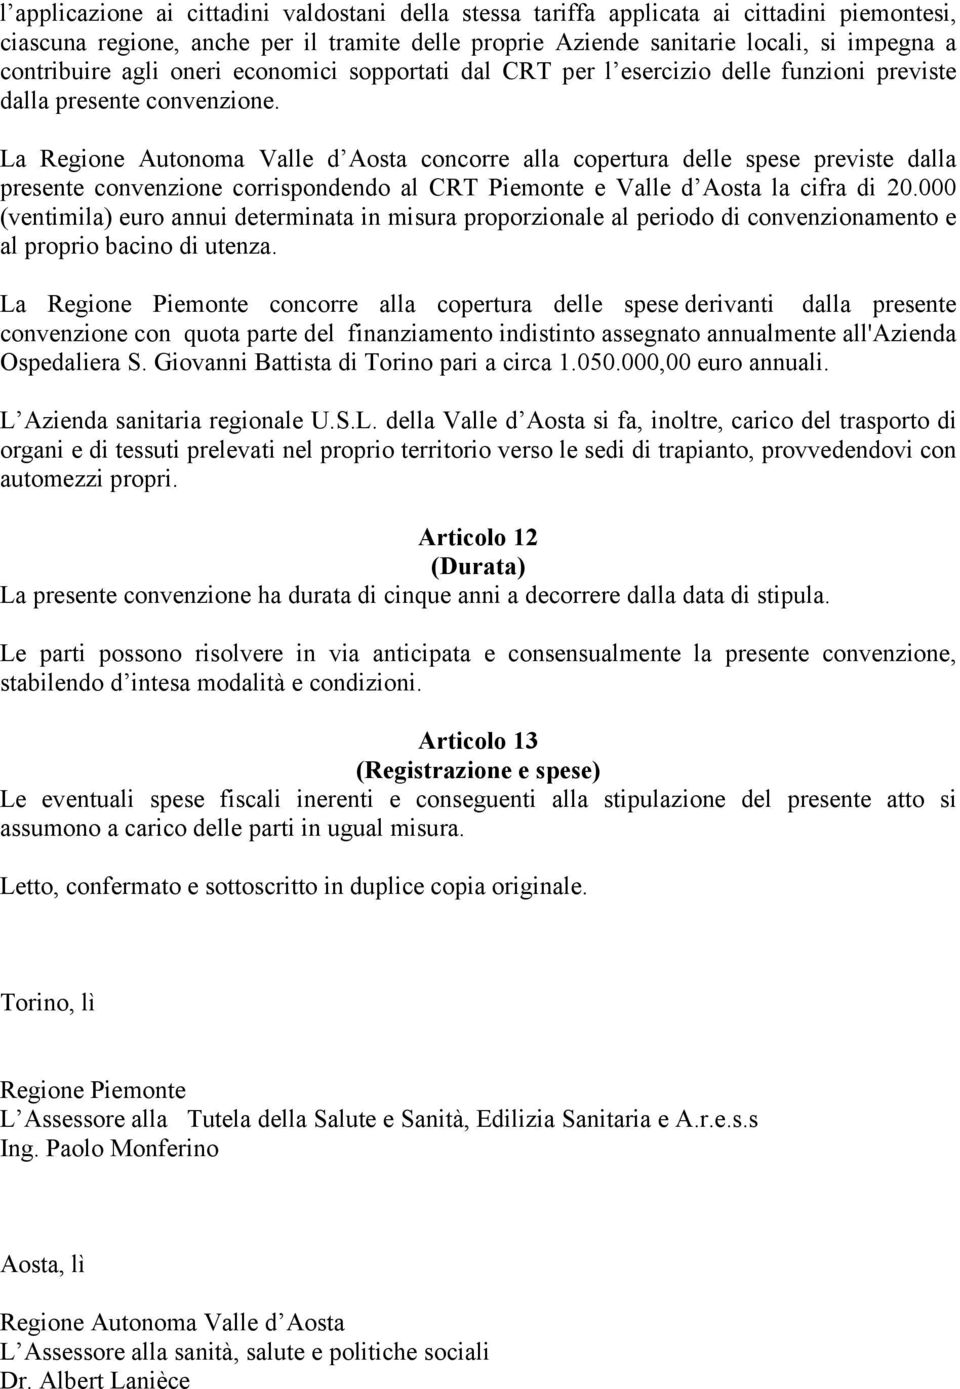 La Regione Autonoma Valle d Aosta concorre alla copertura delle spese previste dalla presente convenzione corrispondendo al CRT Piemonte e Valle d Aosta la cifra di 20.